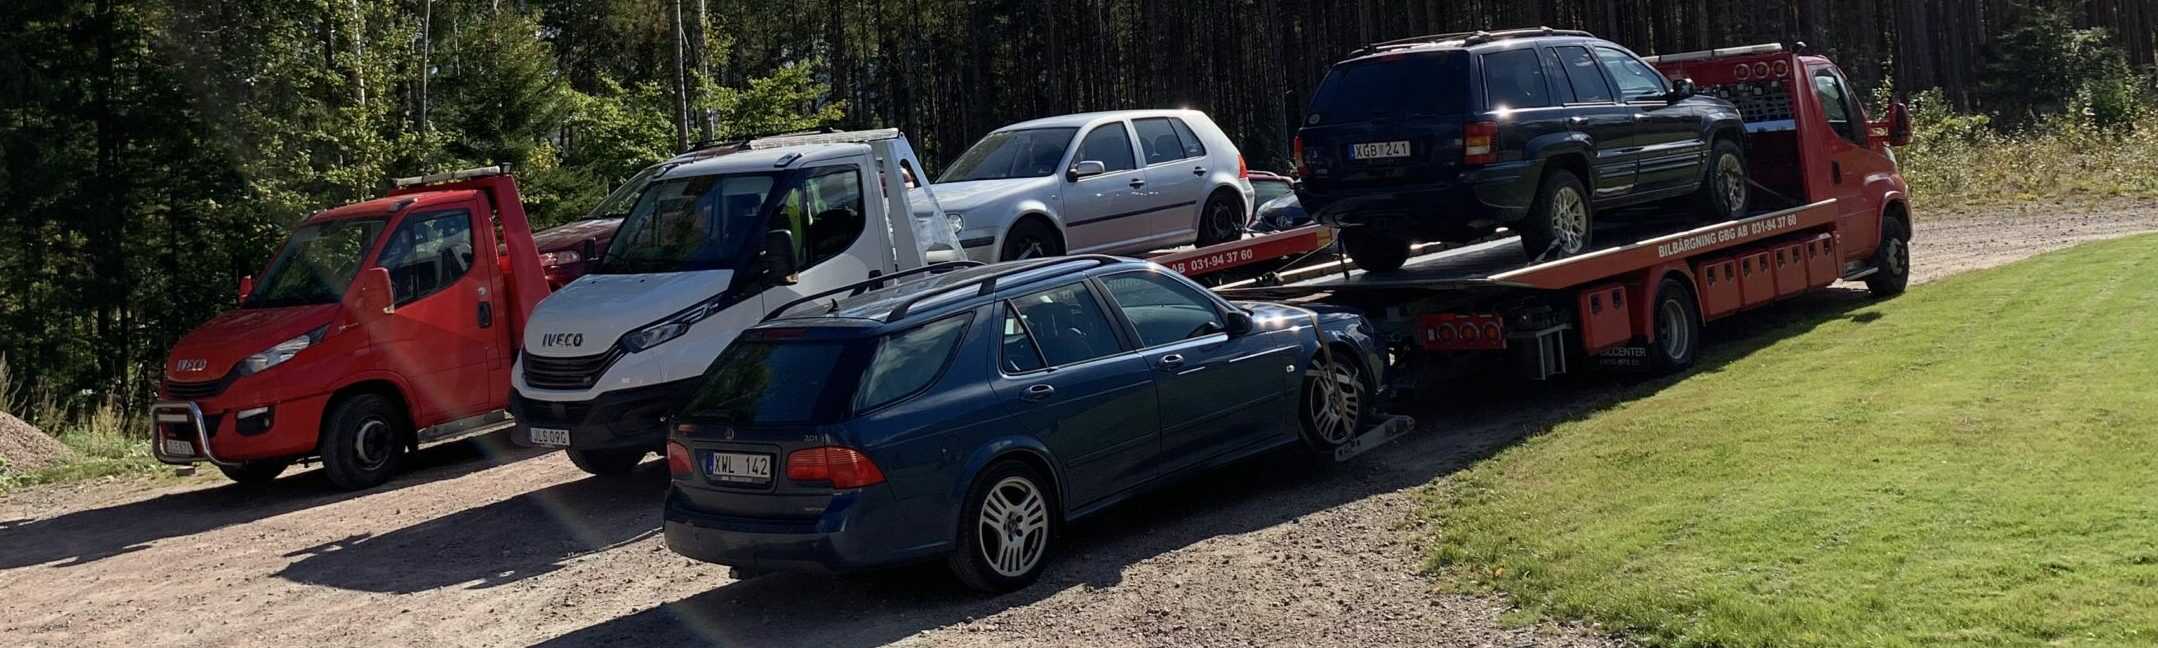 Ersättning från bilskrot för uttjänta Cooper höjs genom återvinning i Göteborg